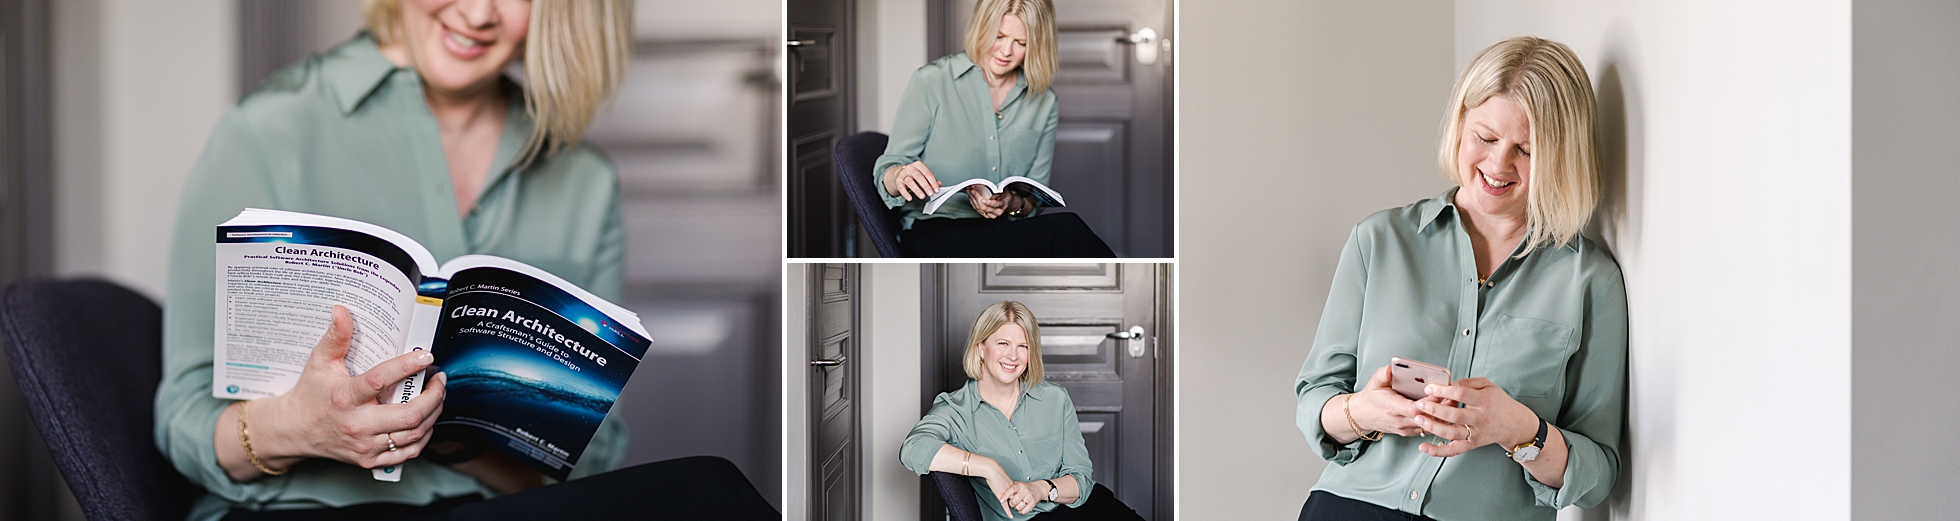 En kvinnlig företagare i IT branschen som läser en bok